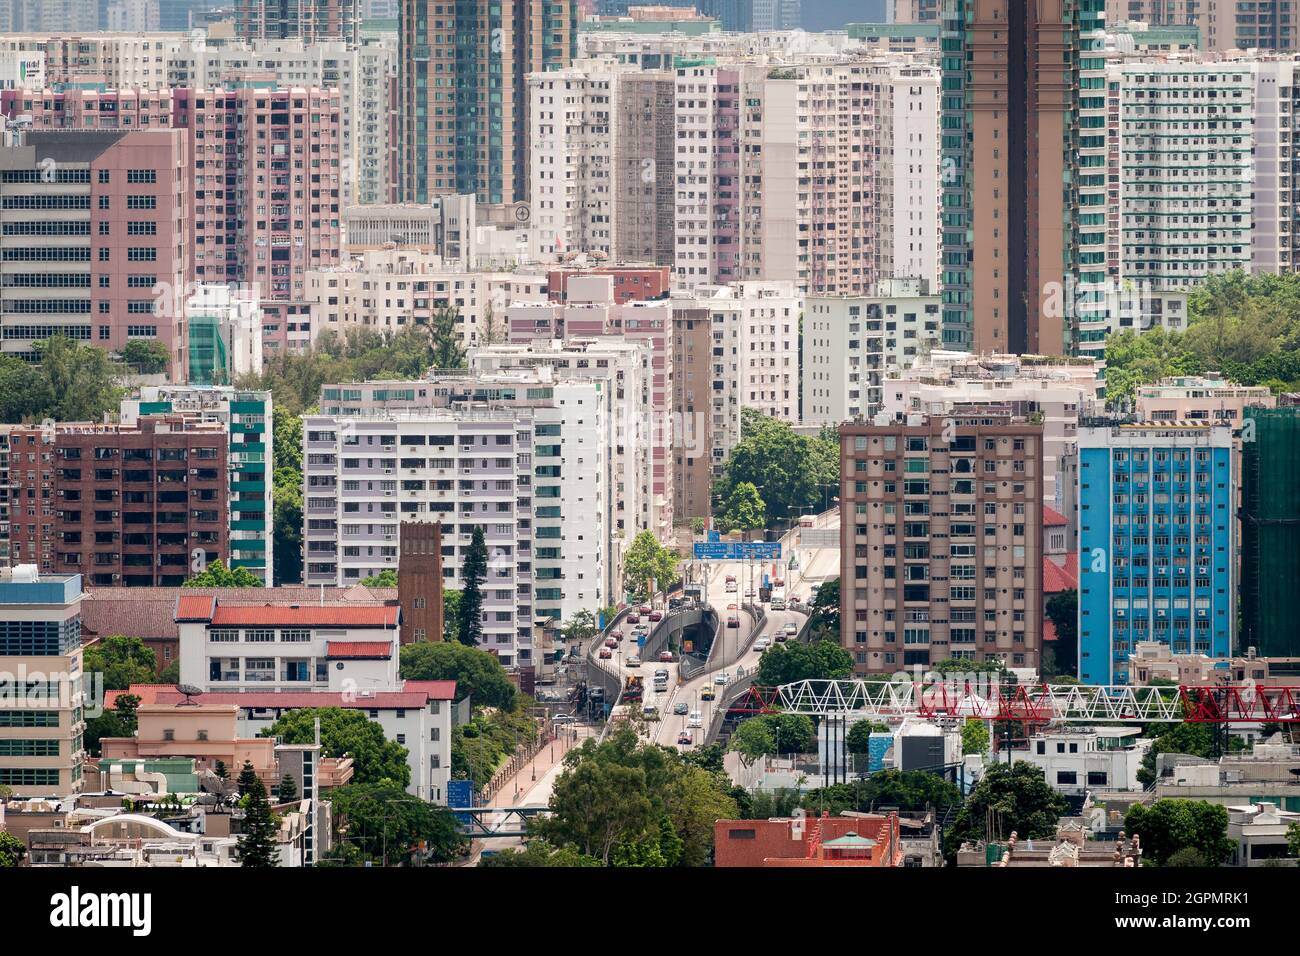 Teleansicht nach Süden, von einem Wohnblock in Beacon Hill, auf Kowloon Tong und Ho man Tin in Kowloon, Hongkong, im Jahr 2009 Stockfoto